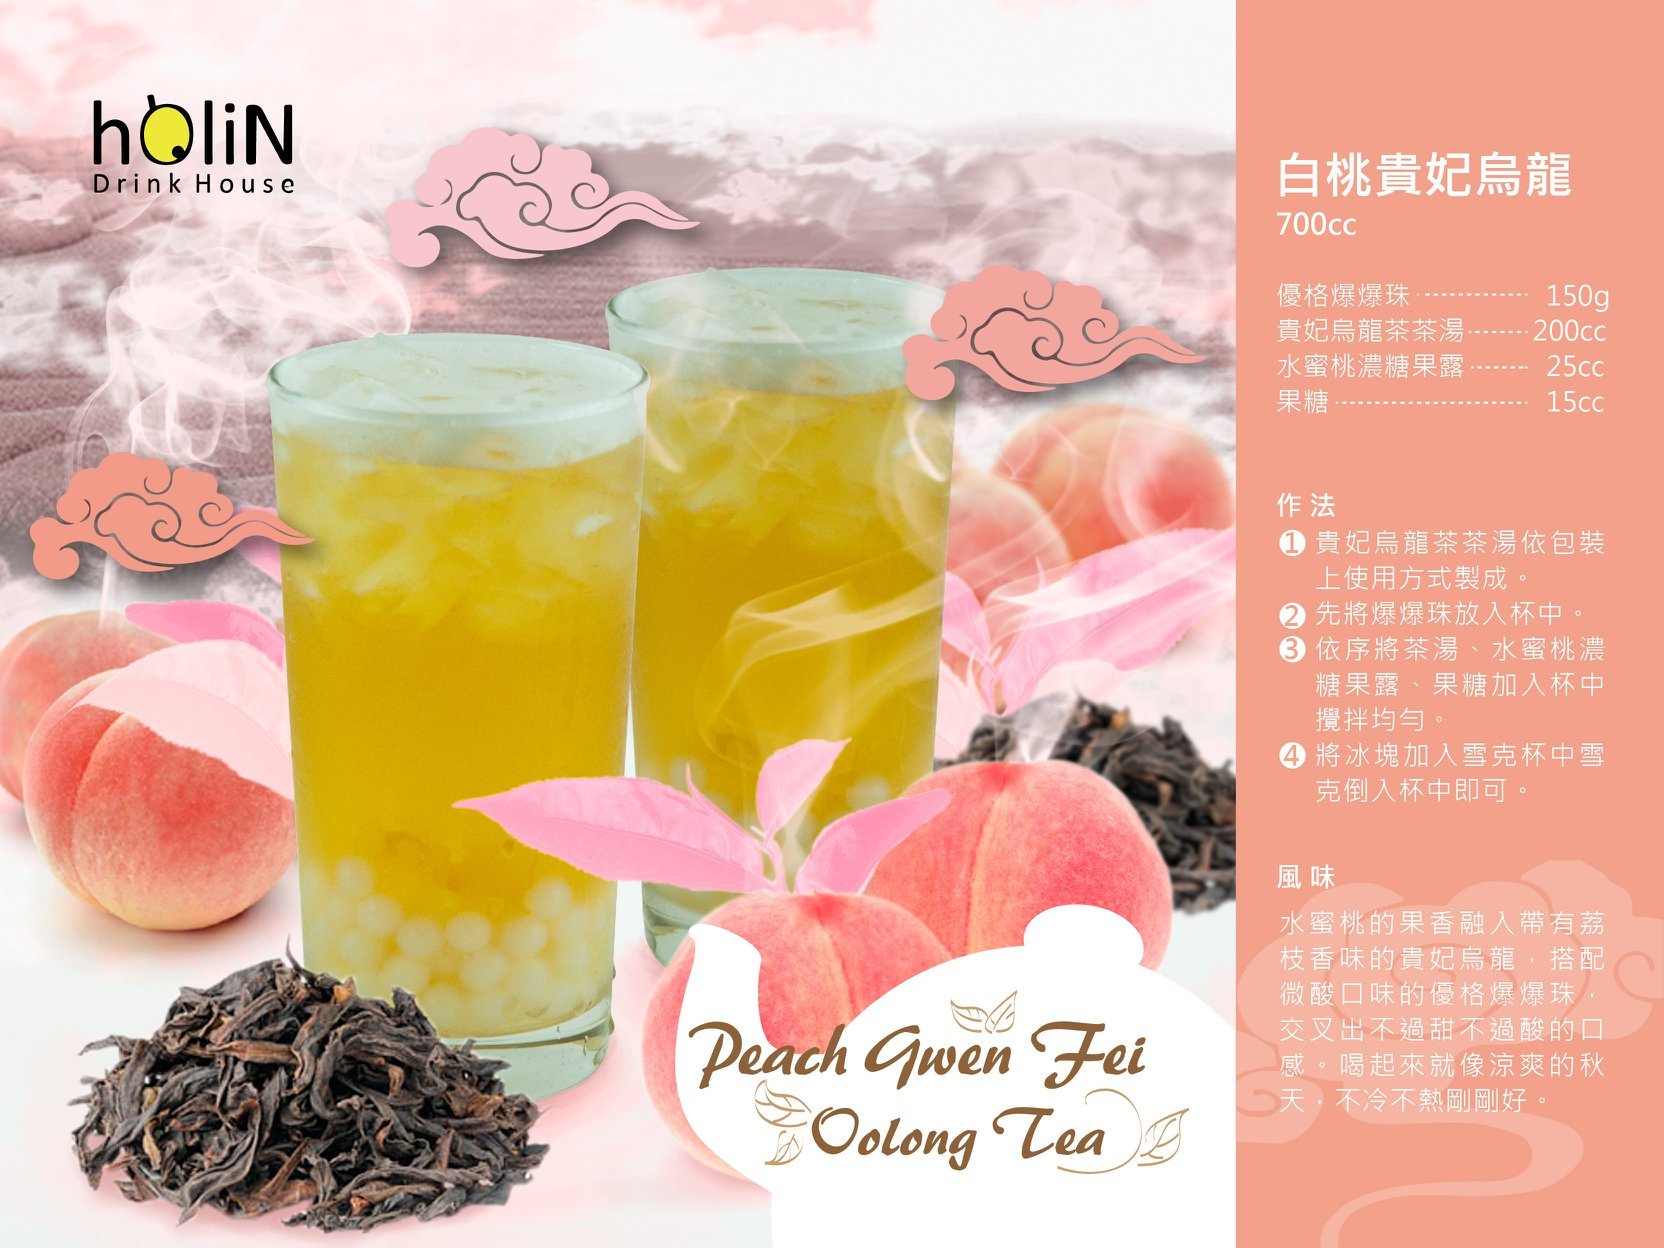 Peach Gwen Fei Oolong Tea   - Popping Boba,Gui Fei Oolong Flavor Tea Sachets,black tea for milktea,how to make milktea,bubbletea